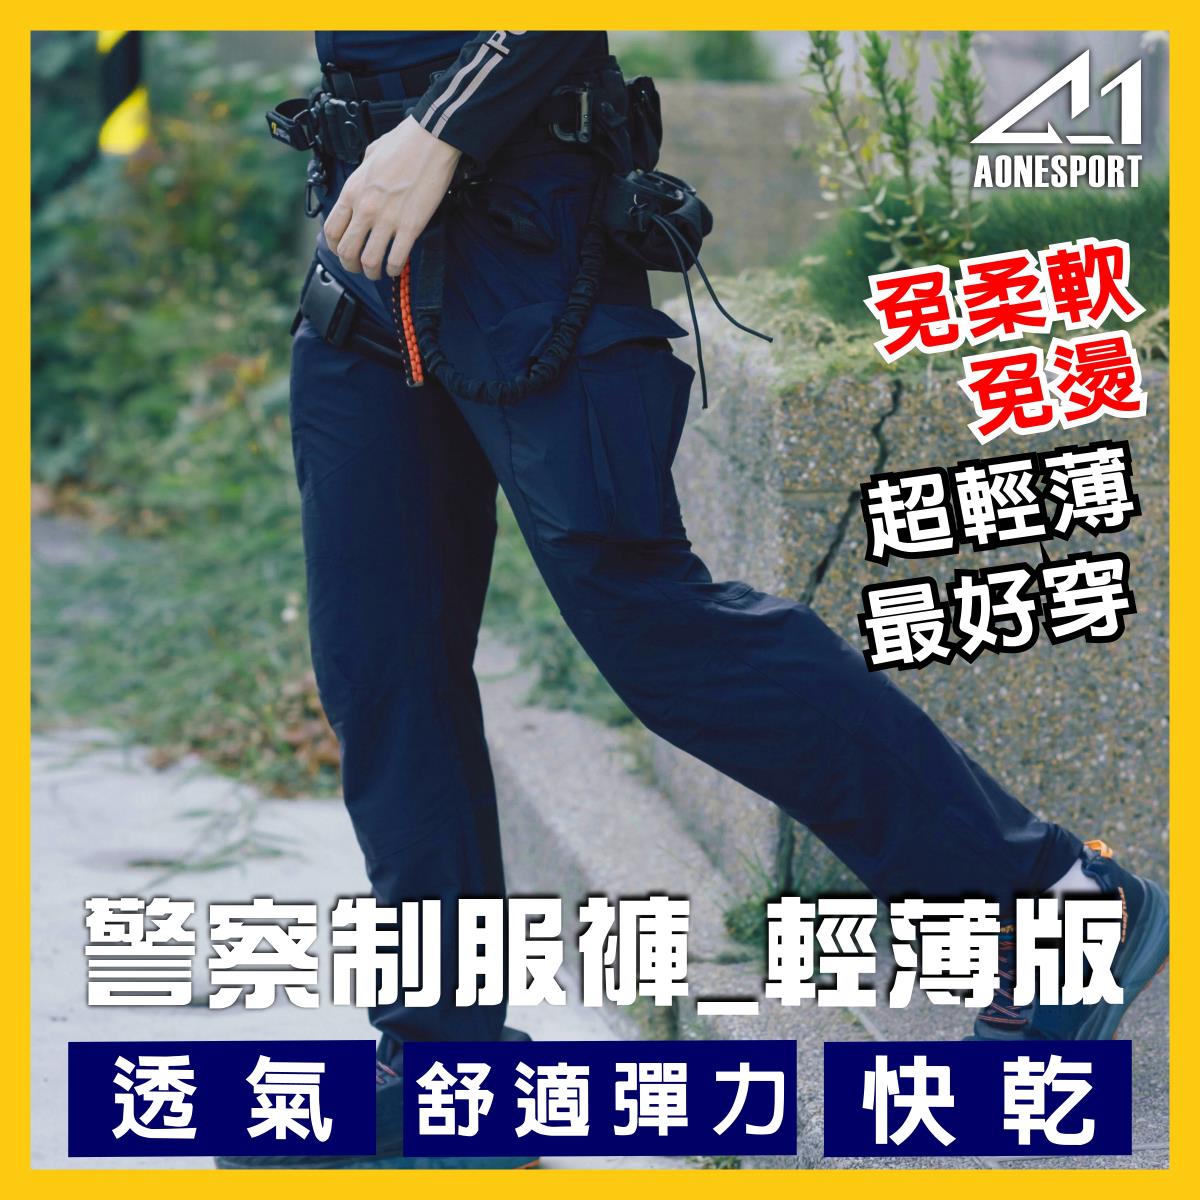 警察制服褲_輕薄版-81018-三件套組,佳豐有限公司